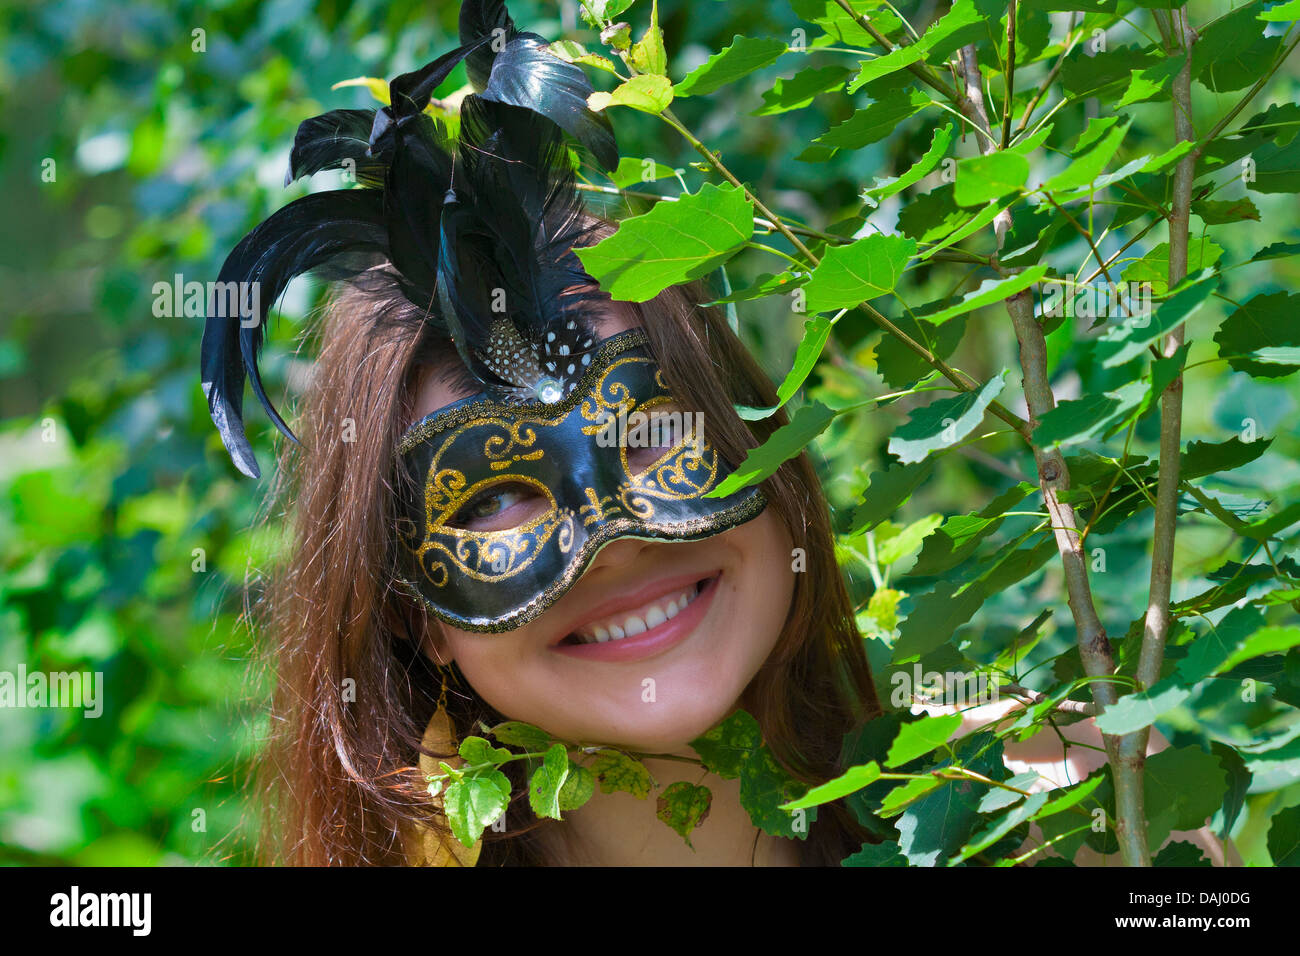 Giovani abbastanza occhi verdi che pongono la donna in estate foresta con carnevale veneziano mask Foto Stock